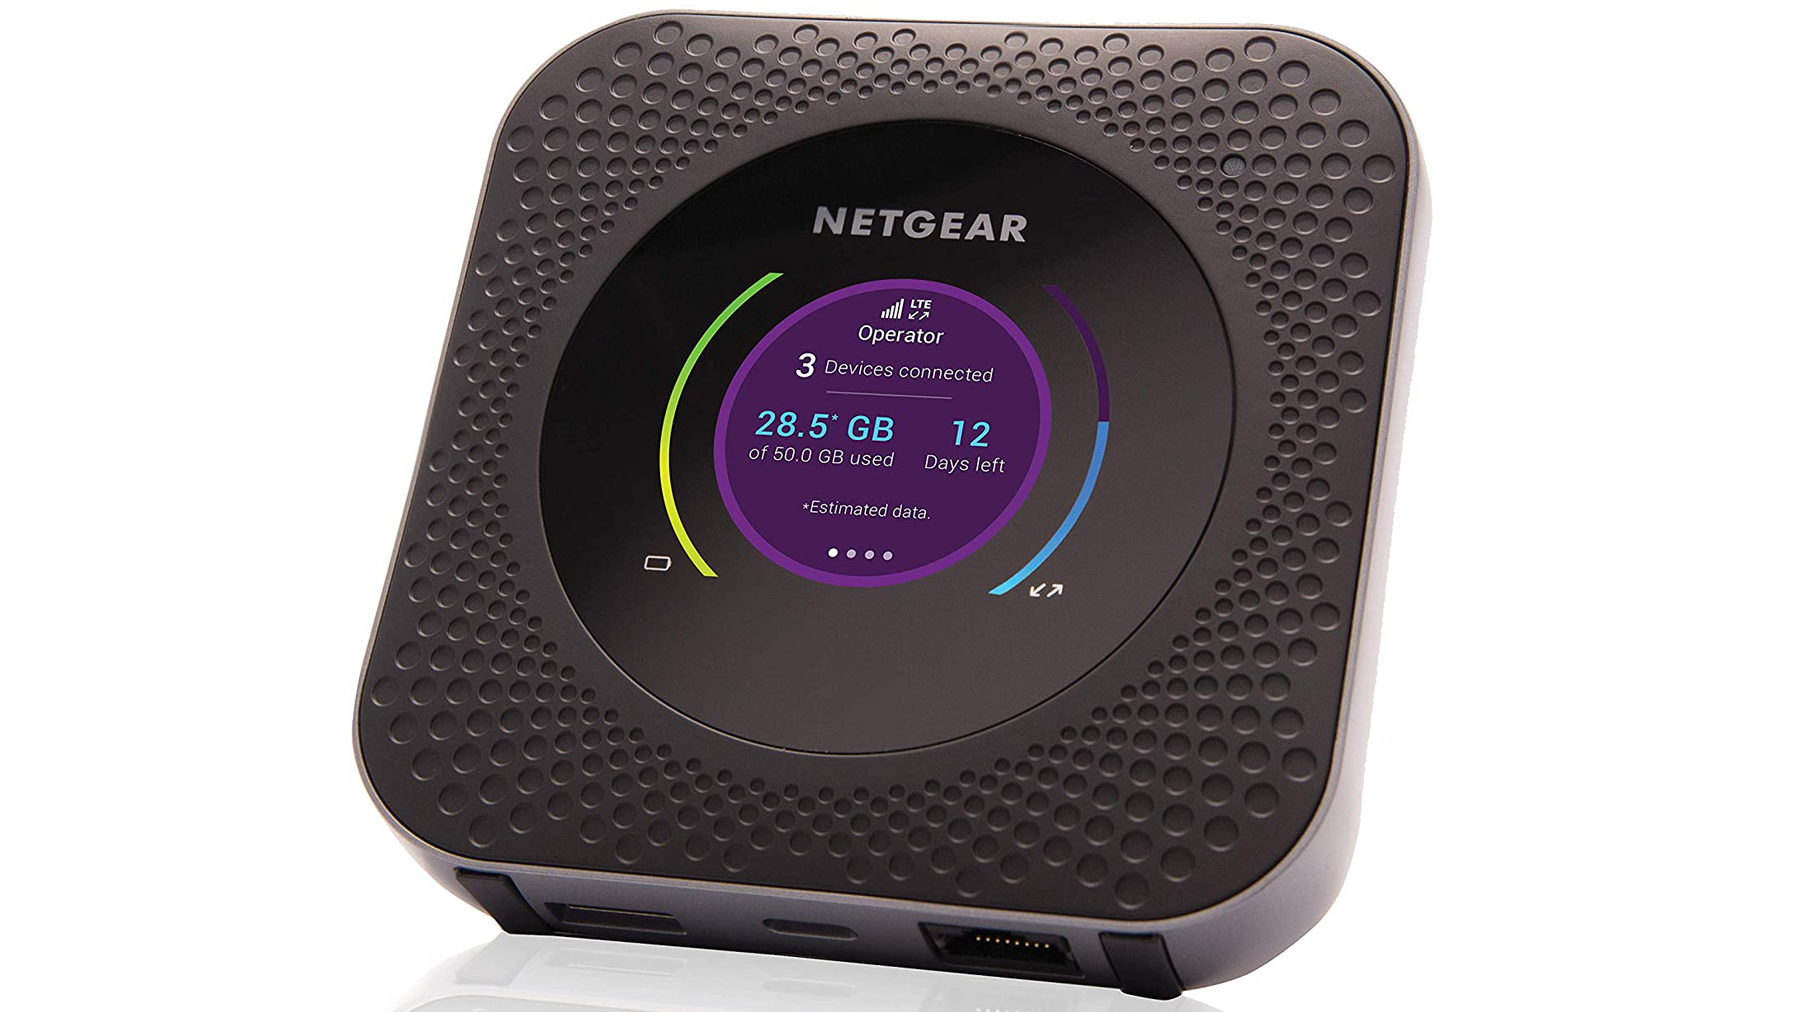 Netgear Nighthawk MR1100 hotspot router